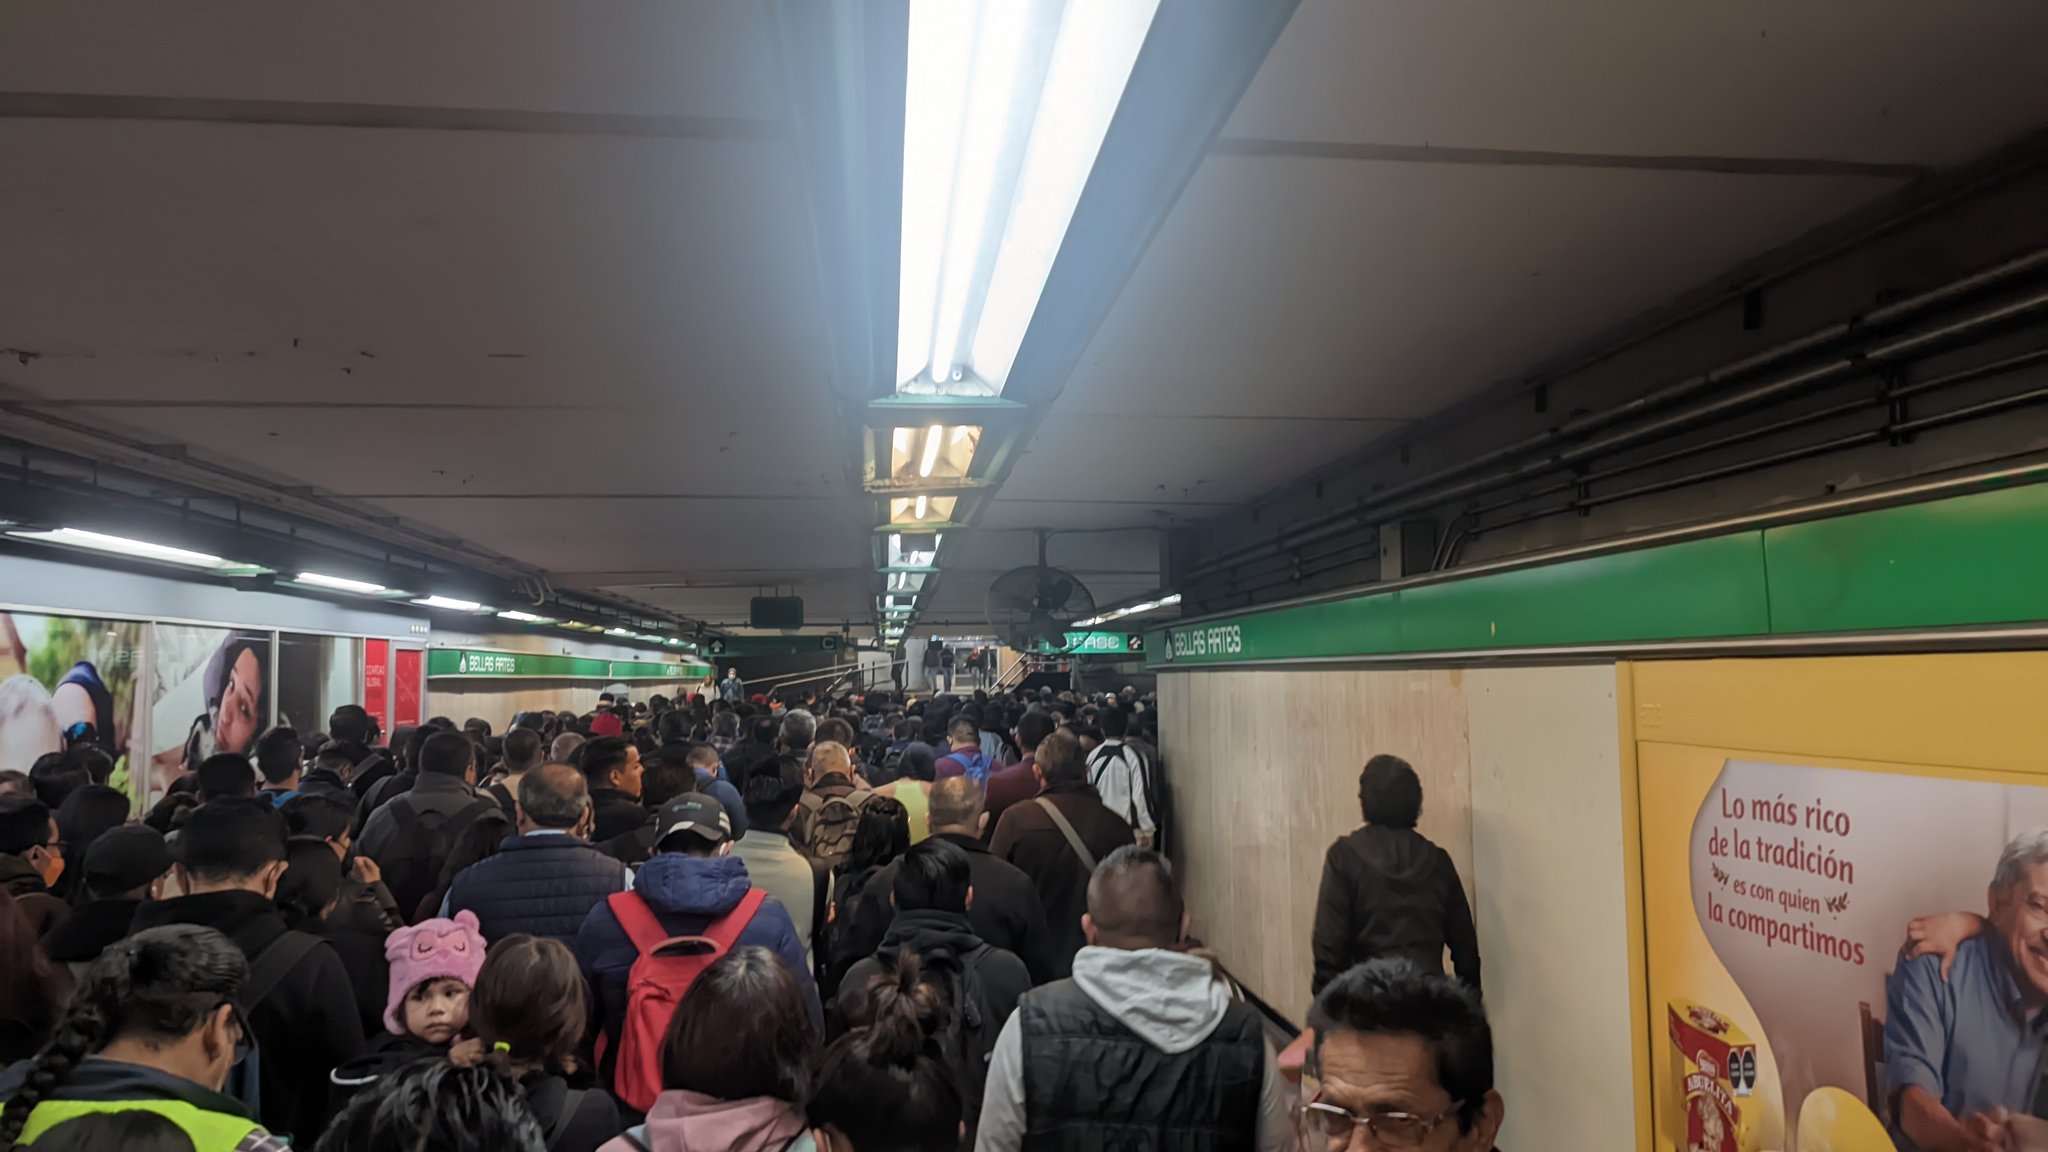 Mañana caótica: Metro CDMX registró retrasos en las líneas B, 8 y 3